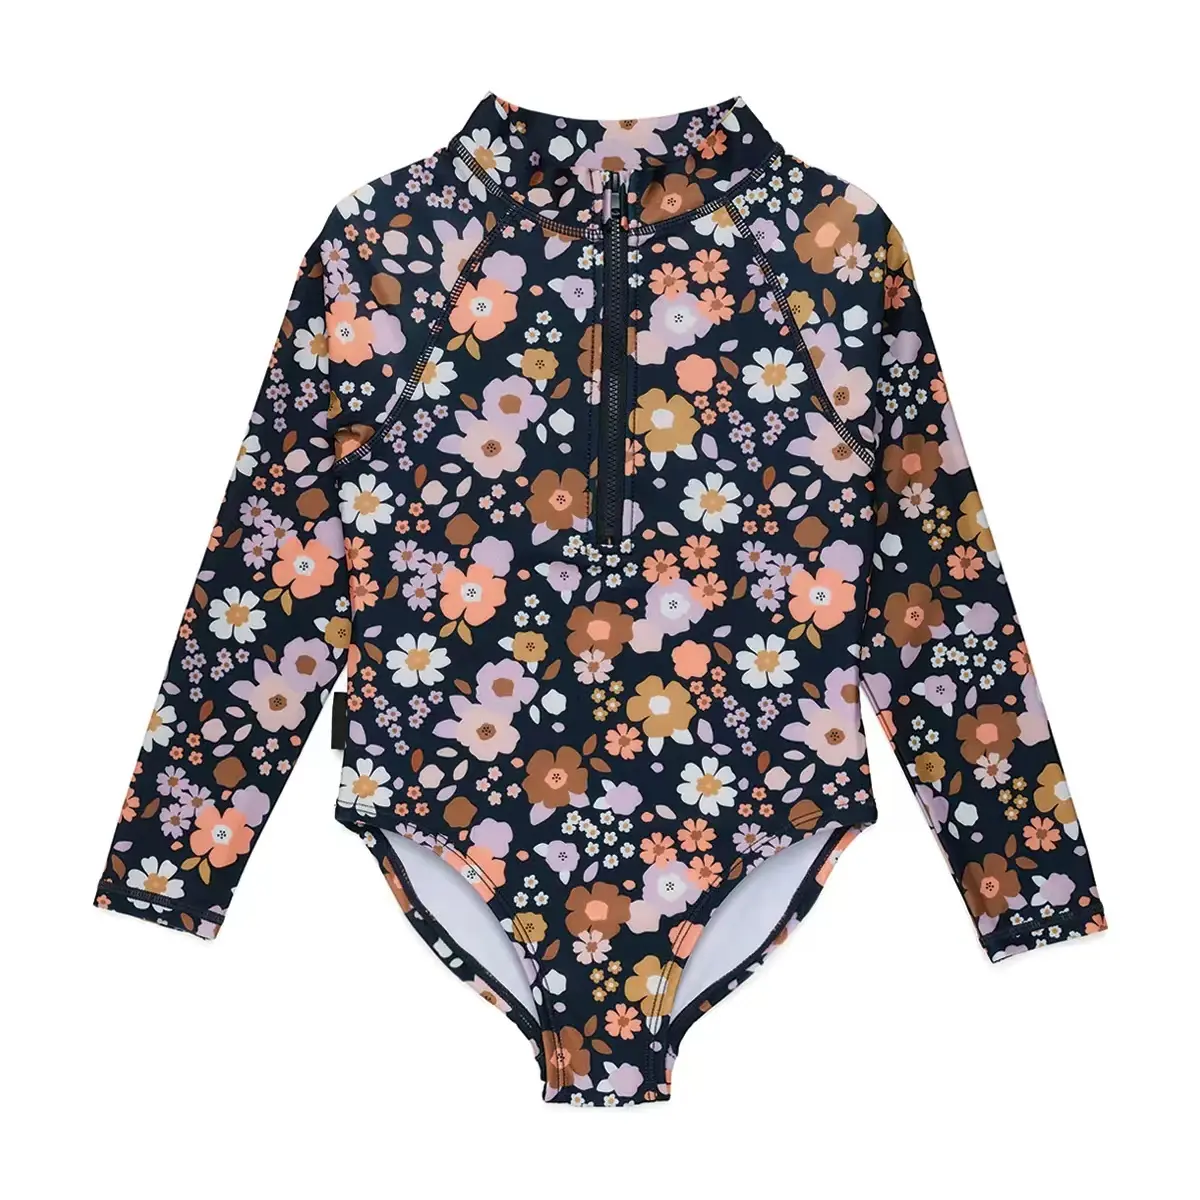 OEM kustom bayi perempuan musim panas motif bunga baju renang satu potong balita bayi pakaian renang anak-anak baju renang anak-anak pakaian mandi